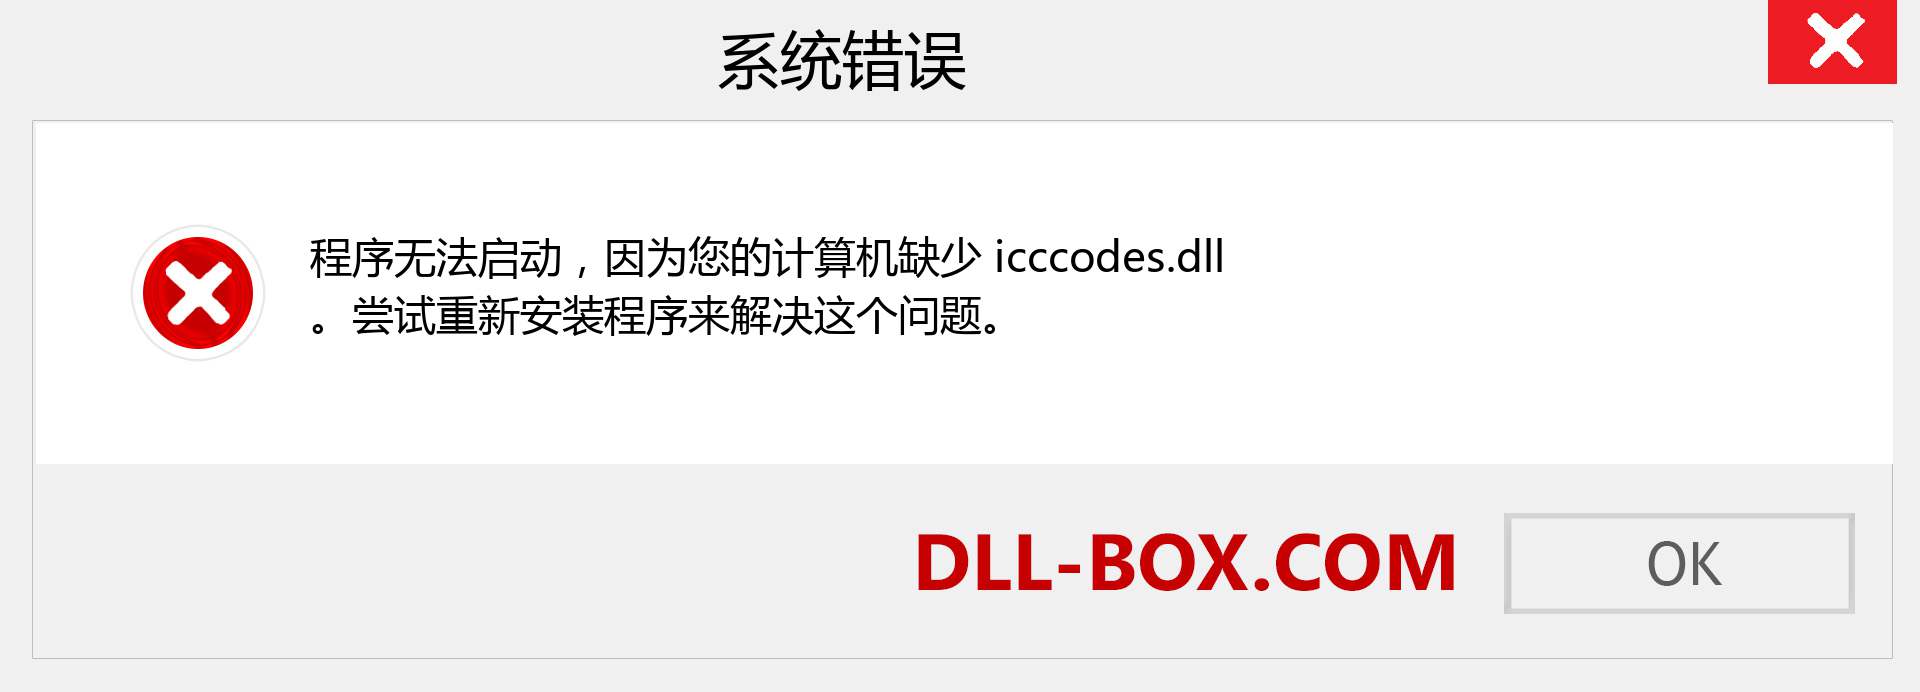 icccodes.dll 文件丢失？。 适用于 Windows 7、8、10 的下载 - 修复 Windows、照片、图像上的 icccodes dll 丢失错误